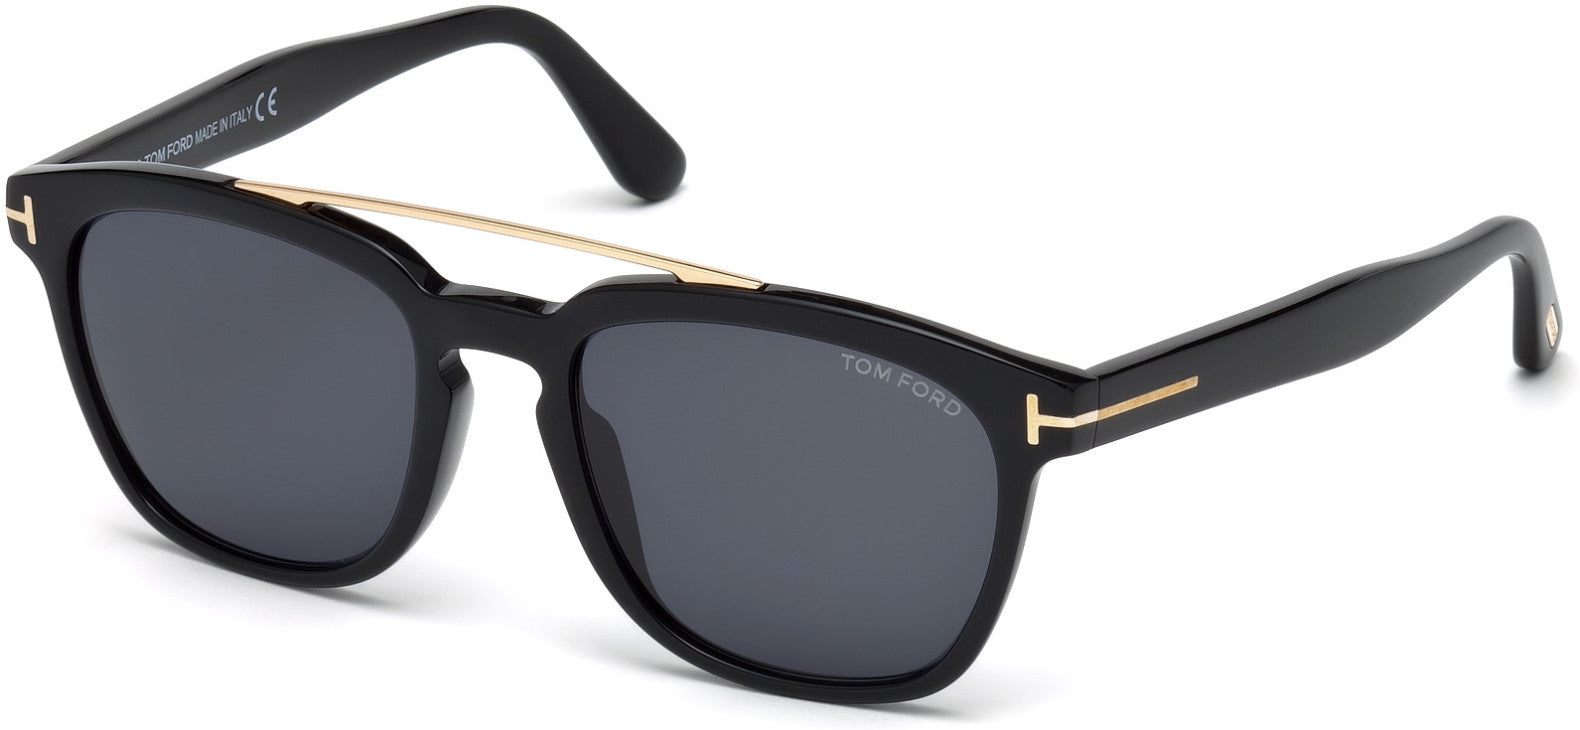 Tom Ford FT0516 Holt Geometric Sunglasses For Men